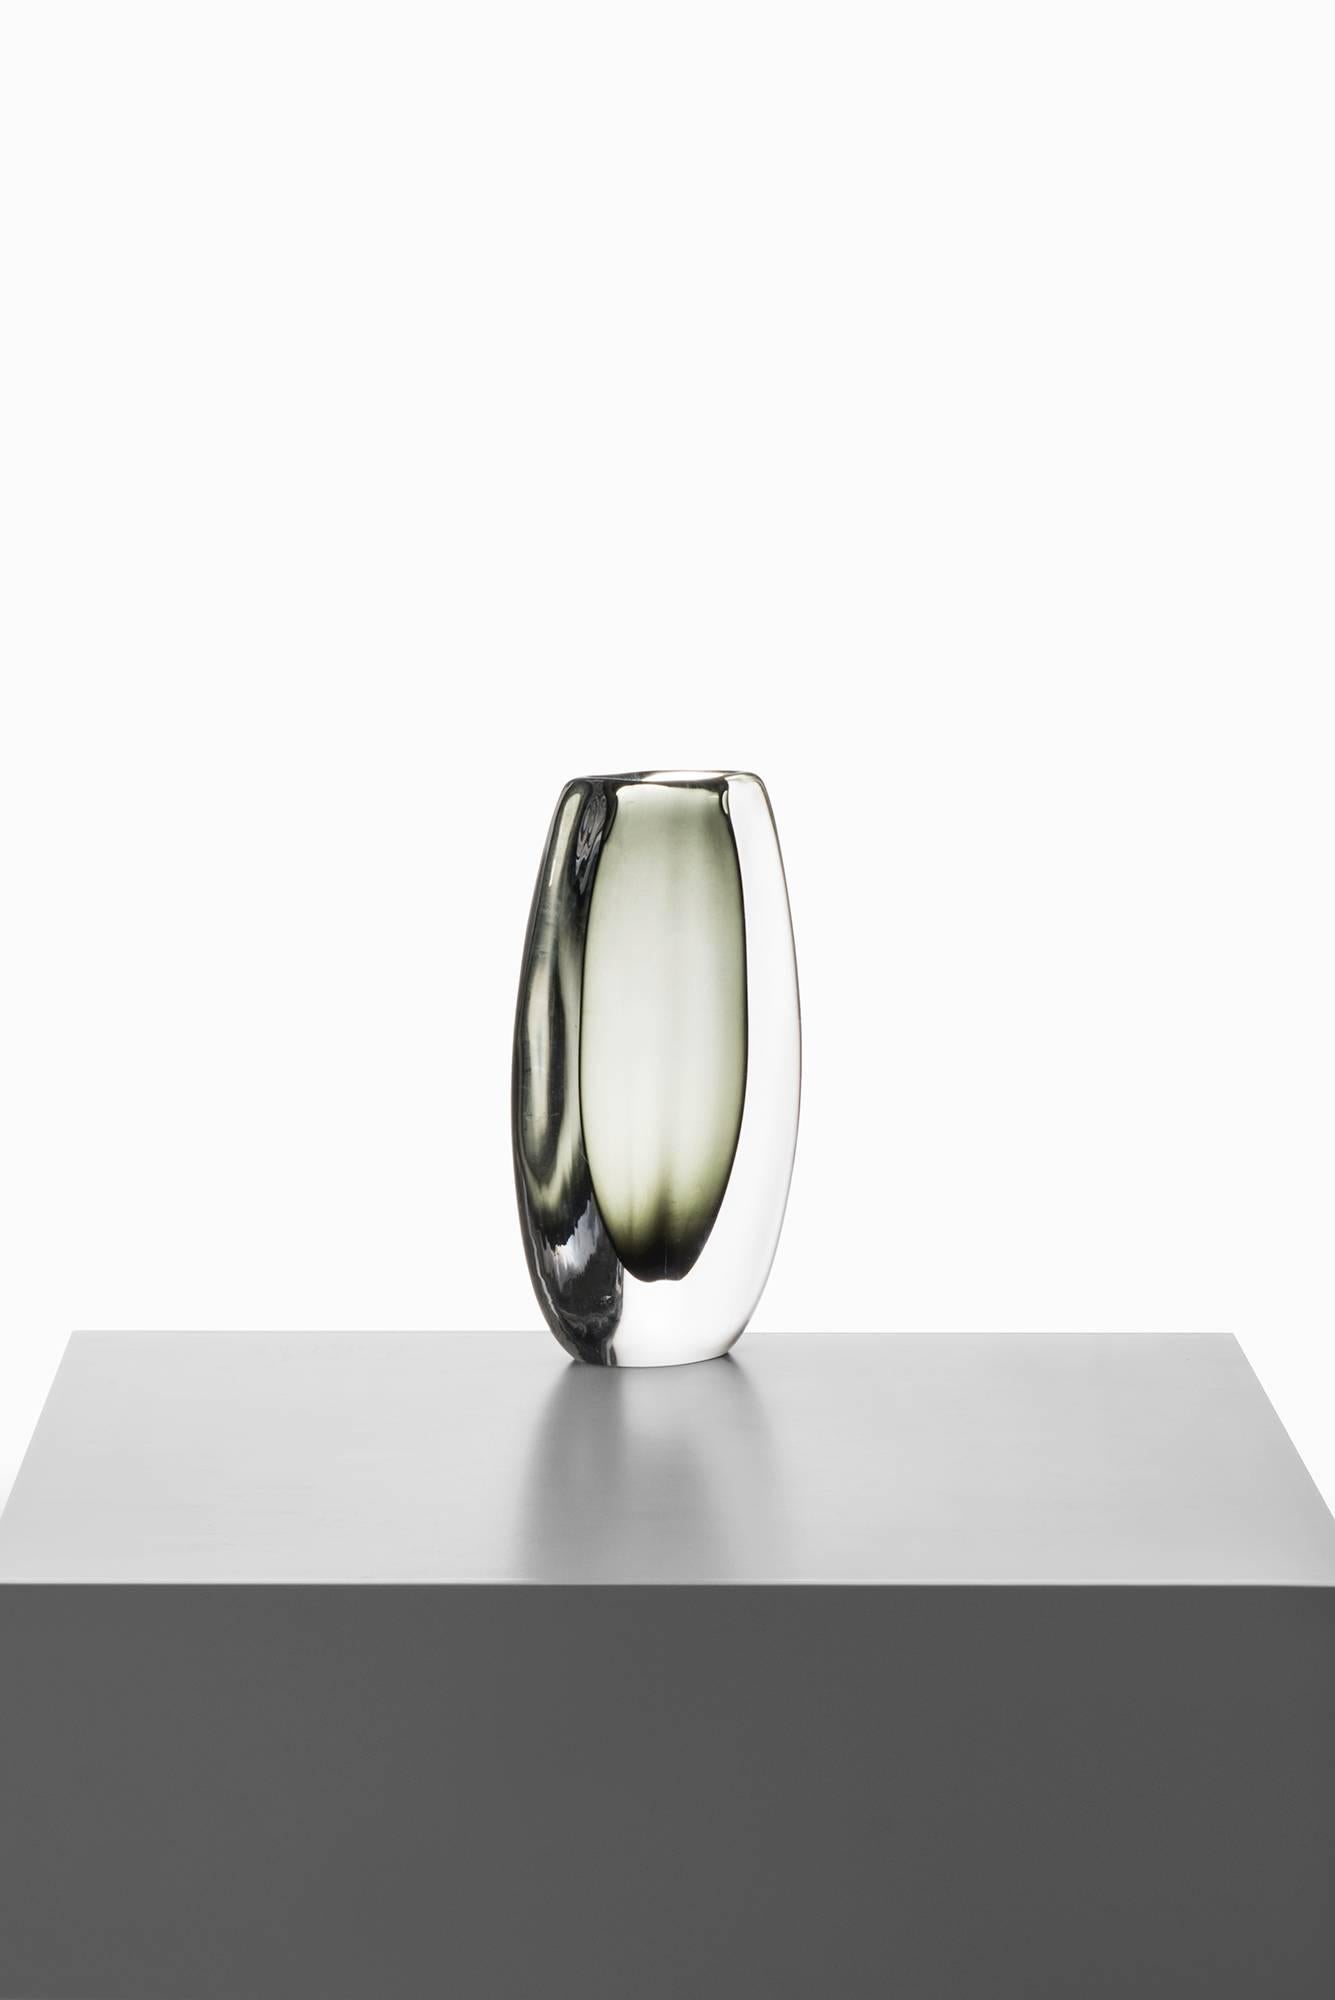 Glass vase model Sommerso designed by Nils Landberg. Produced in Orrefors in Sweden. Signed “Orrefors 3538 / 7.″